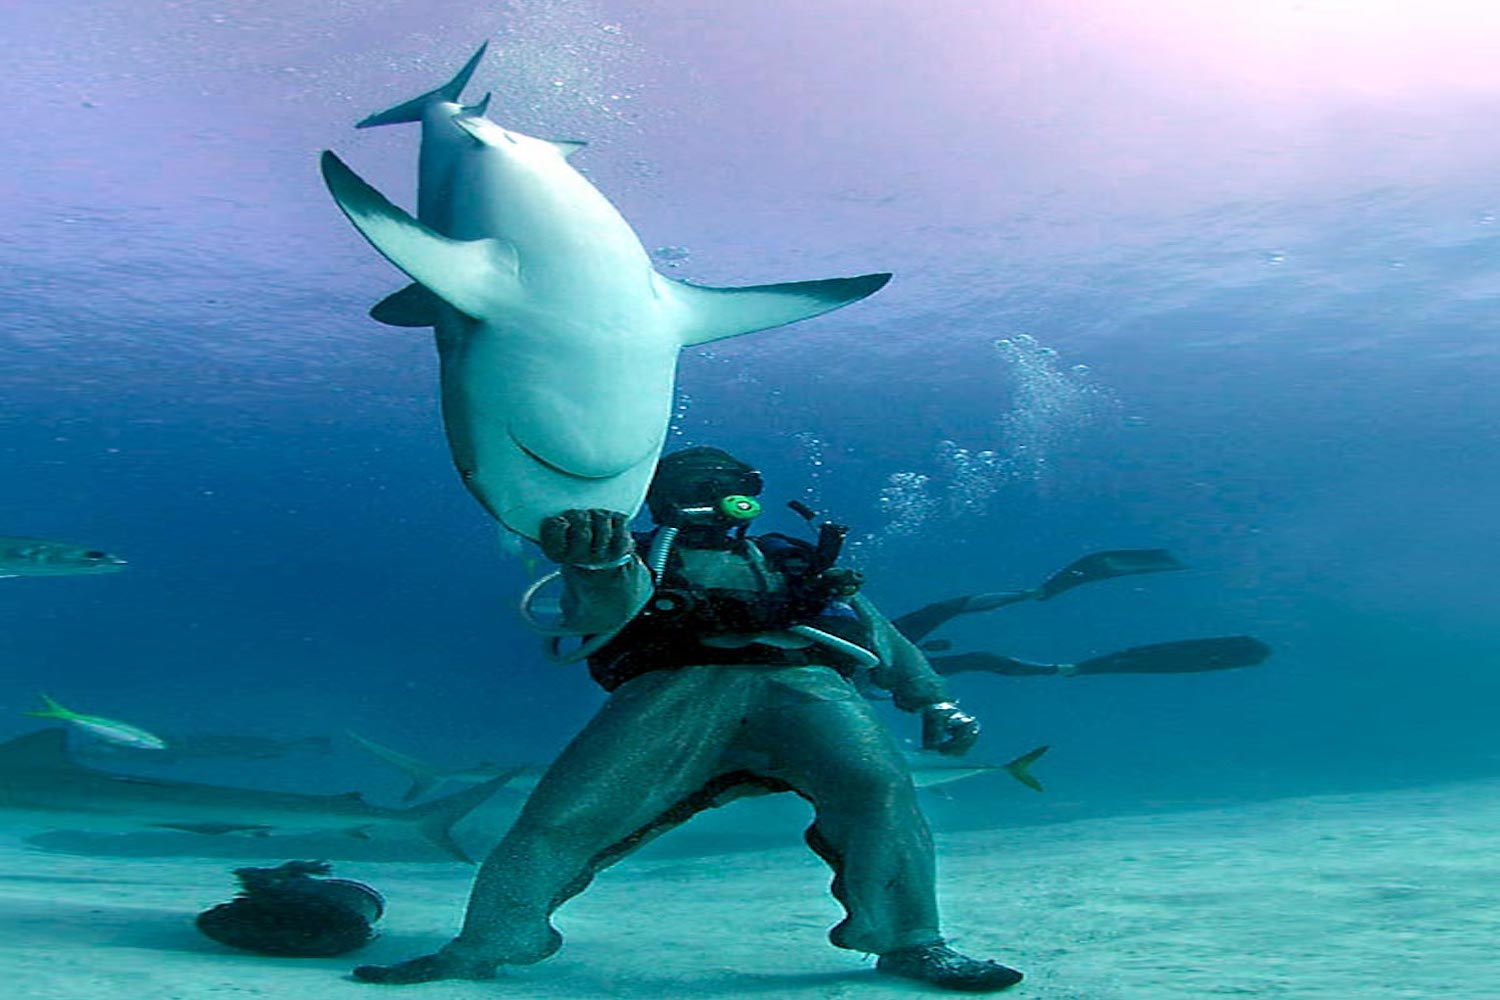 Οι καρχαρίες ”εμπνέουν” τη ναυπηγική - e-Nautilia.gr | Το Ελληνικό Portal για την Ναυτιλία. Τελευταία νέα, άρθρα, Οπτικοακουστικό Υλικό